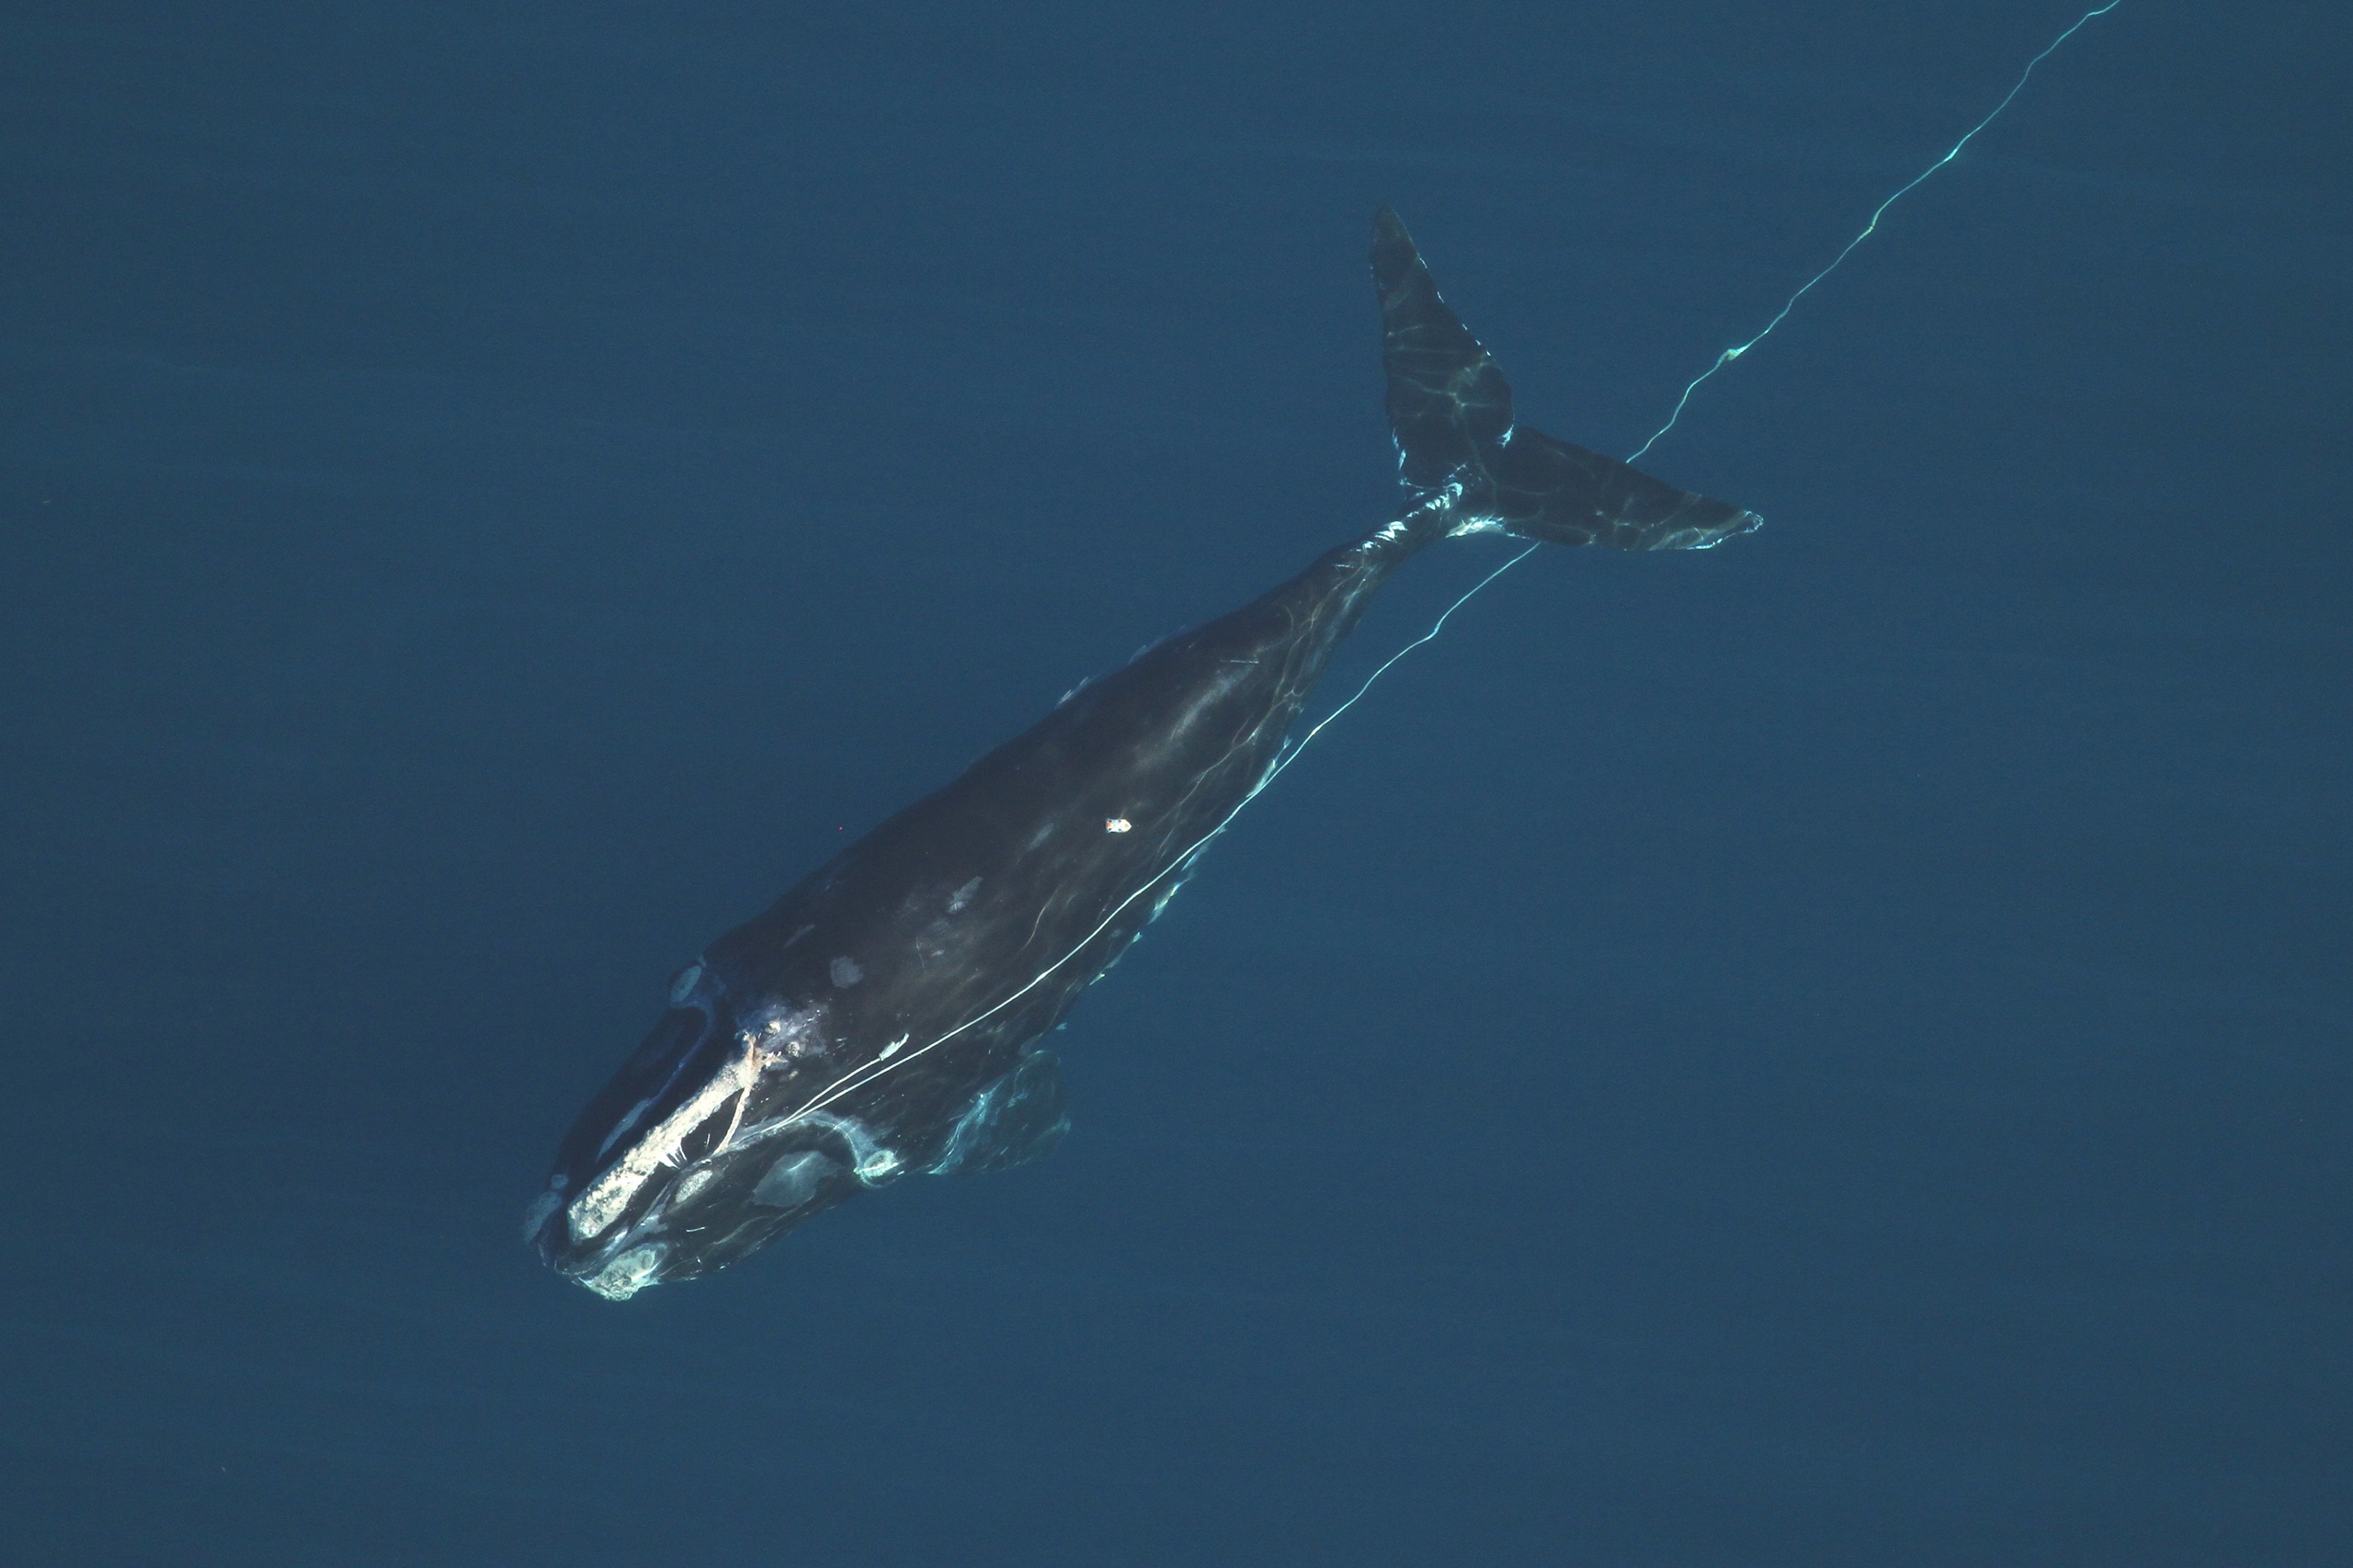 <p>Una ballena franca enredada en una cuerda de pesca frente a la costa de Florida, Estados Unidos. Enredarse así puede herir o incluso matar a ballenas y otros mamíferos marinos. (Imagen: <a href="https://www.flickr.com/photos/myfwc/51789930318/in/album-72157720247908410/">Comisión de Conservación de Pesca y Vida Silvestre de Florida</a>, sacada con permiso de investigación de la NOAA / <a href="https://www.flickr.com/people/myfwc/">Flickr</a>, <a href="https://creativecommons.org/licenses/by-nc-nd/2.0/">CC BY NC ND</a>)</p>